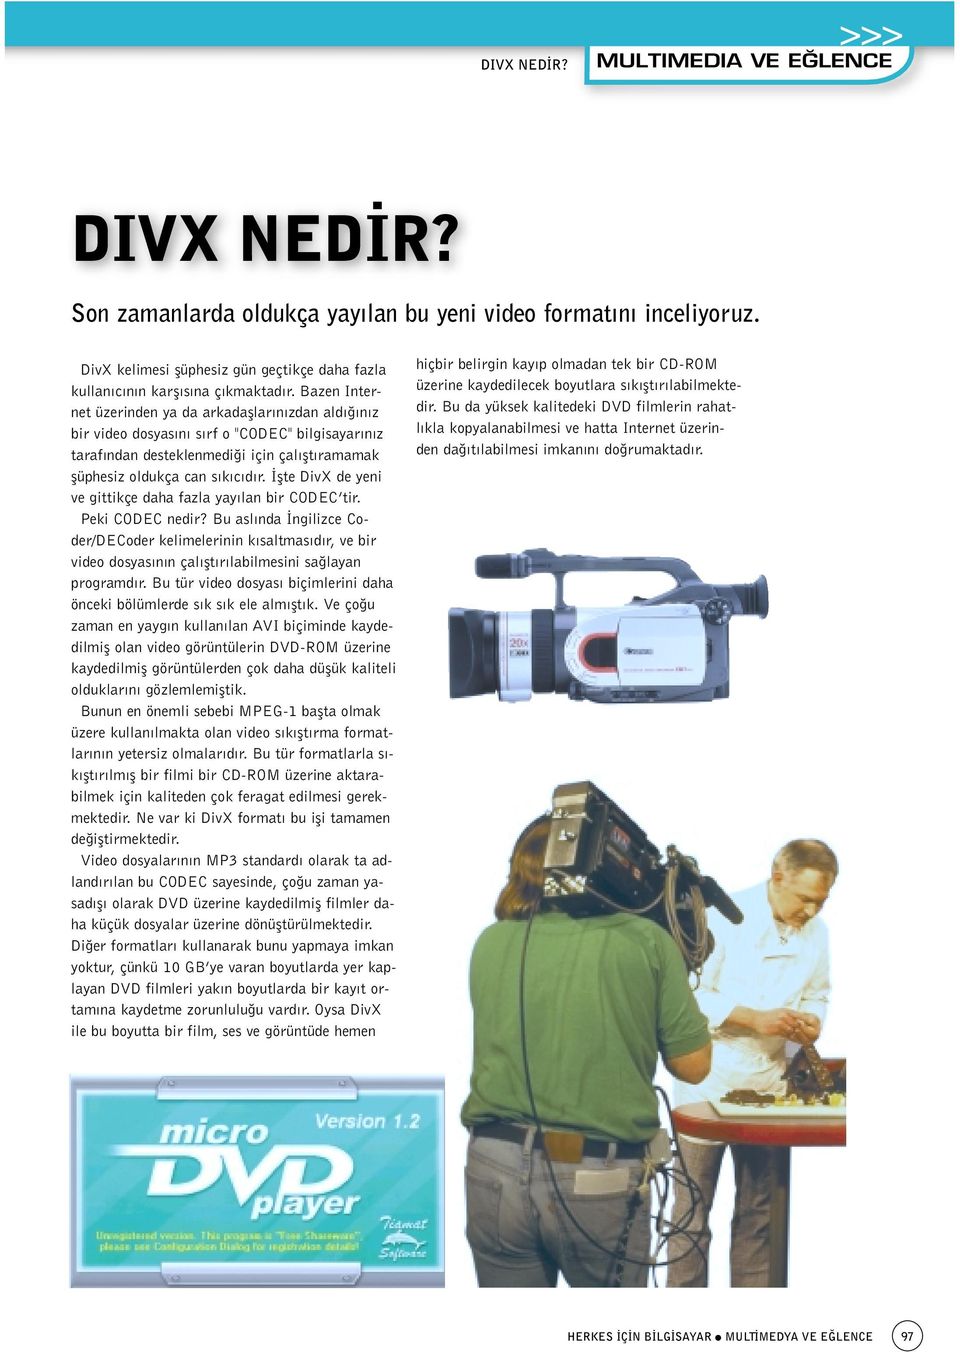 flte DivX de yeni ve gittikçe daha fazla yay lan bir CODEC tir. Peki CODEC nedir?